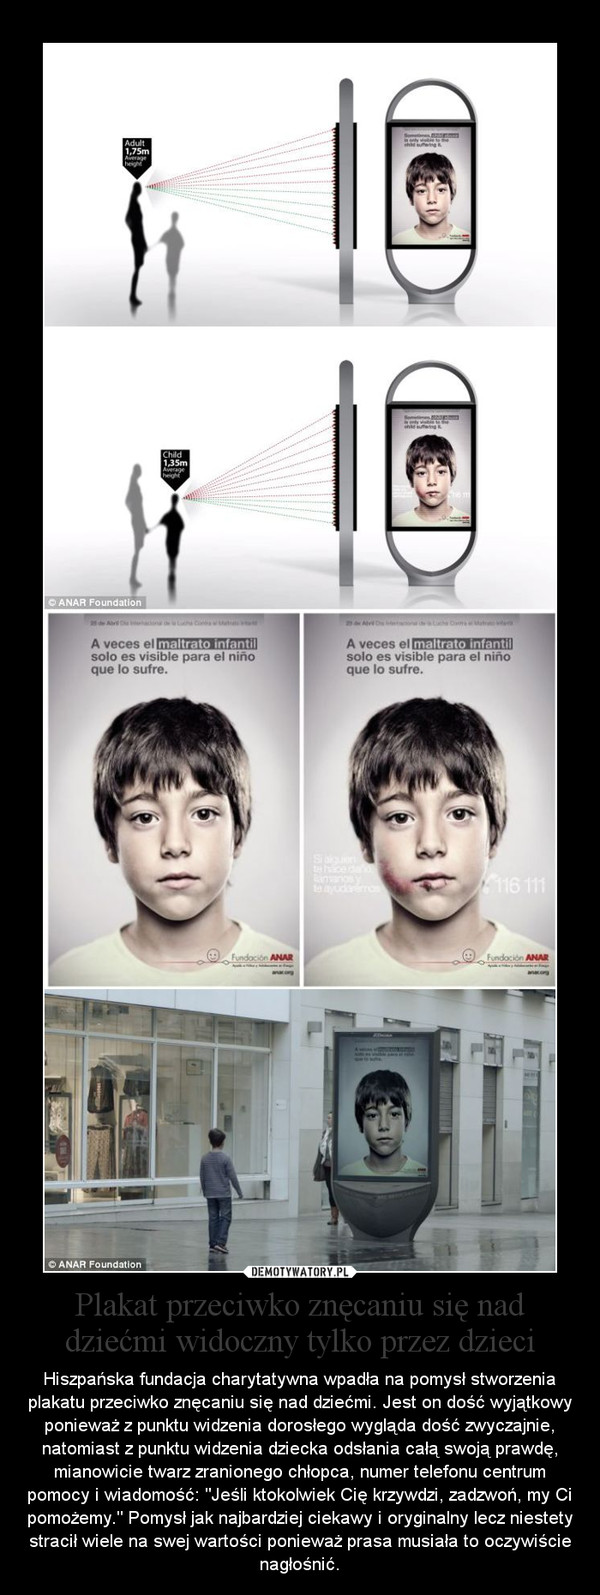 Plakat przeciwko znęcaniu się nad dziećmi widoczny tylko przez dzieci